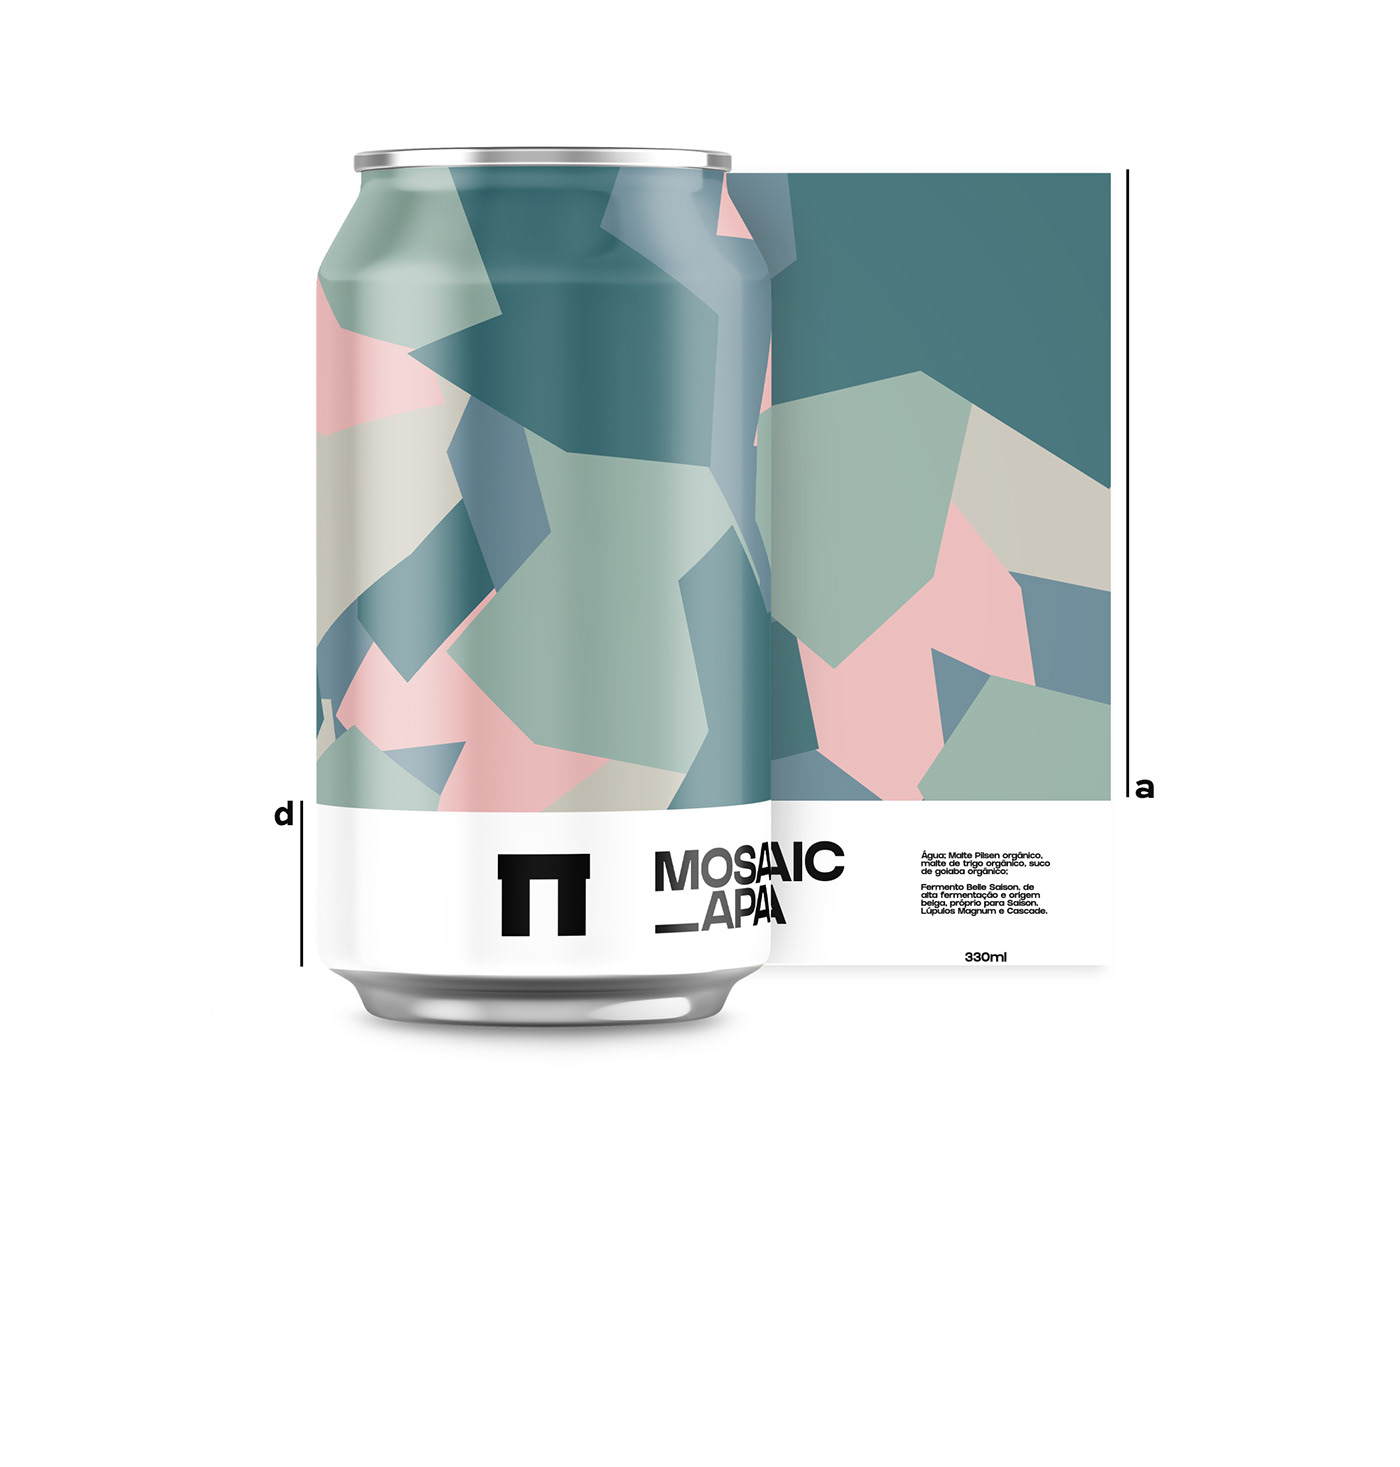 bar beer brand branding  Cerveja embalagens minimalist Packaging rotule rótulo